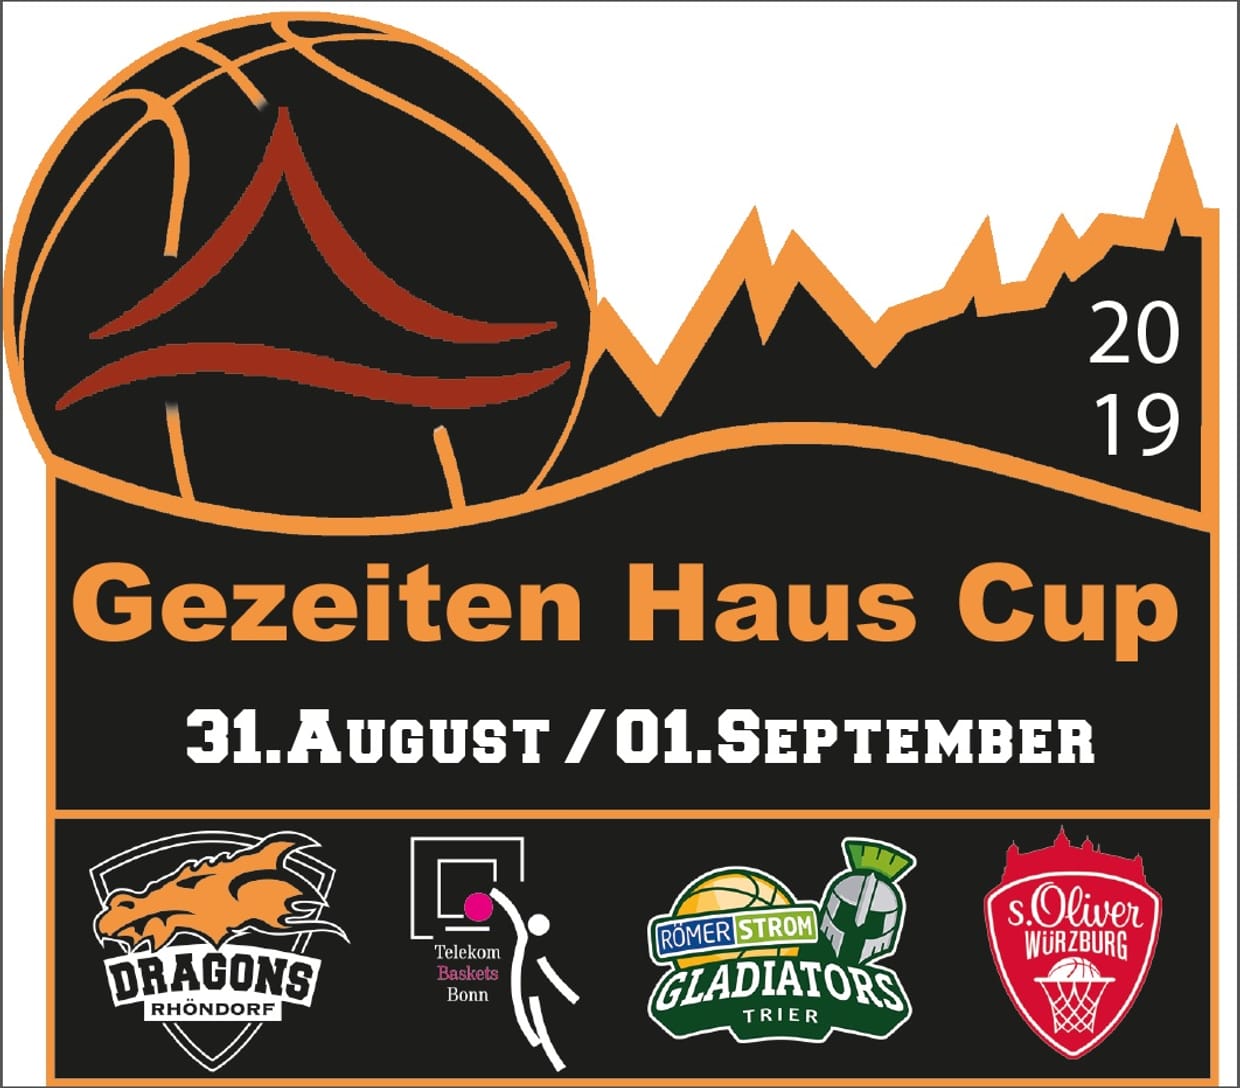 Gezeiten-Haus Cup 2019  Sonntag